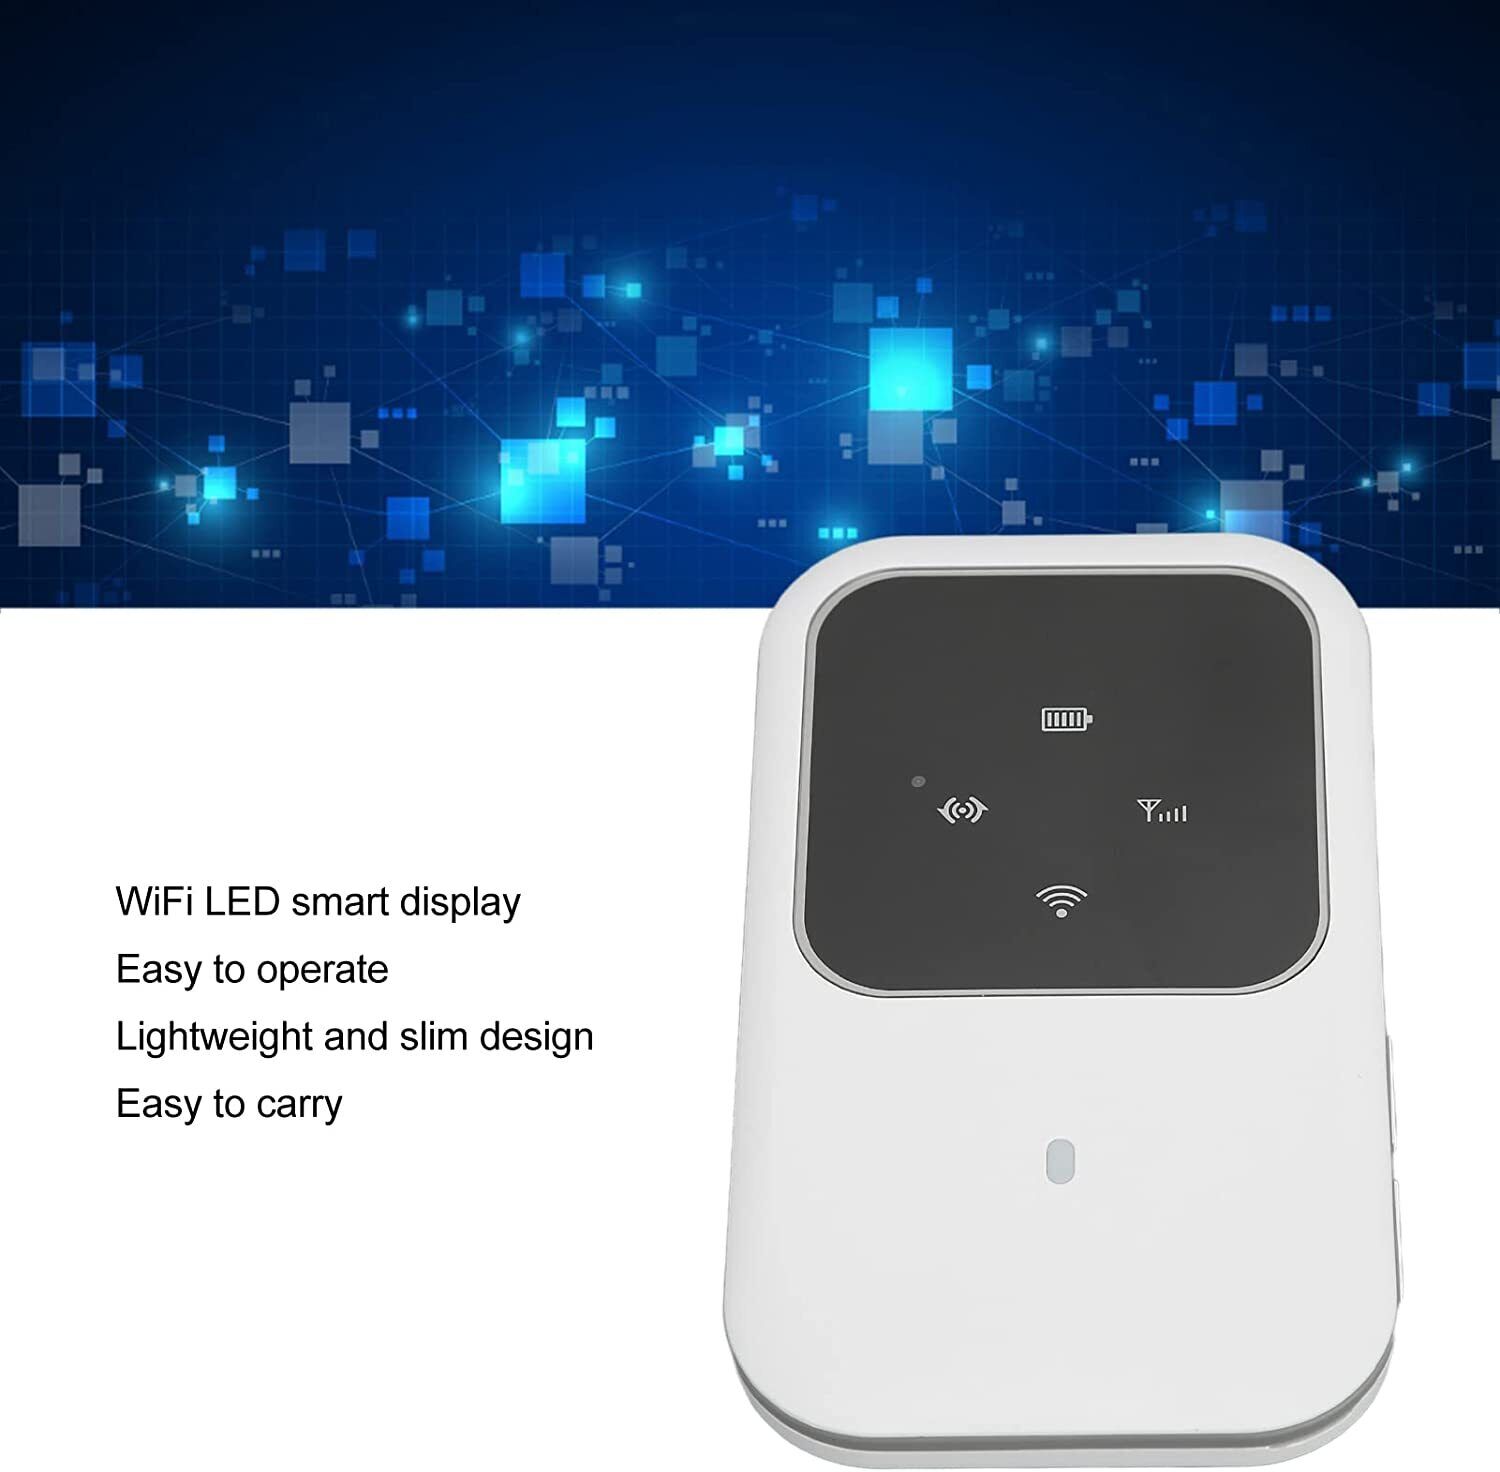 Mobile WiFi Tragbarer Hotspot 4G LTE WLAN Router Reisen Mobiler Netzwerk Hotspot